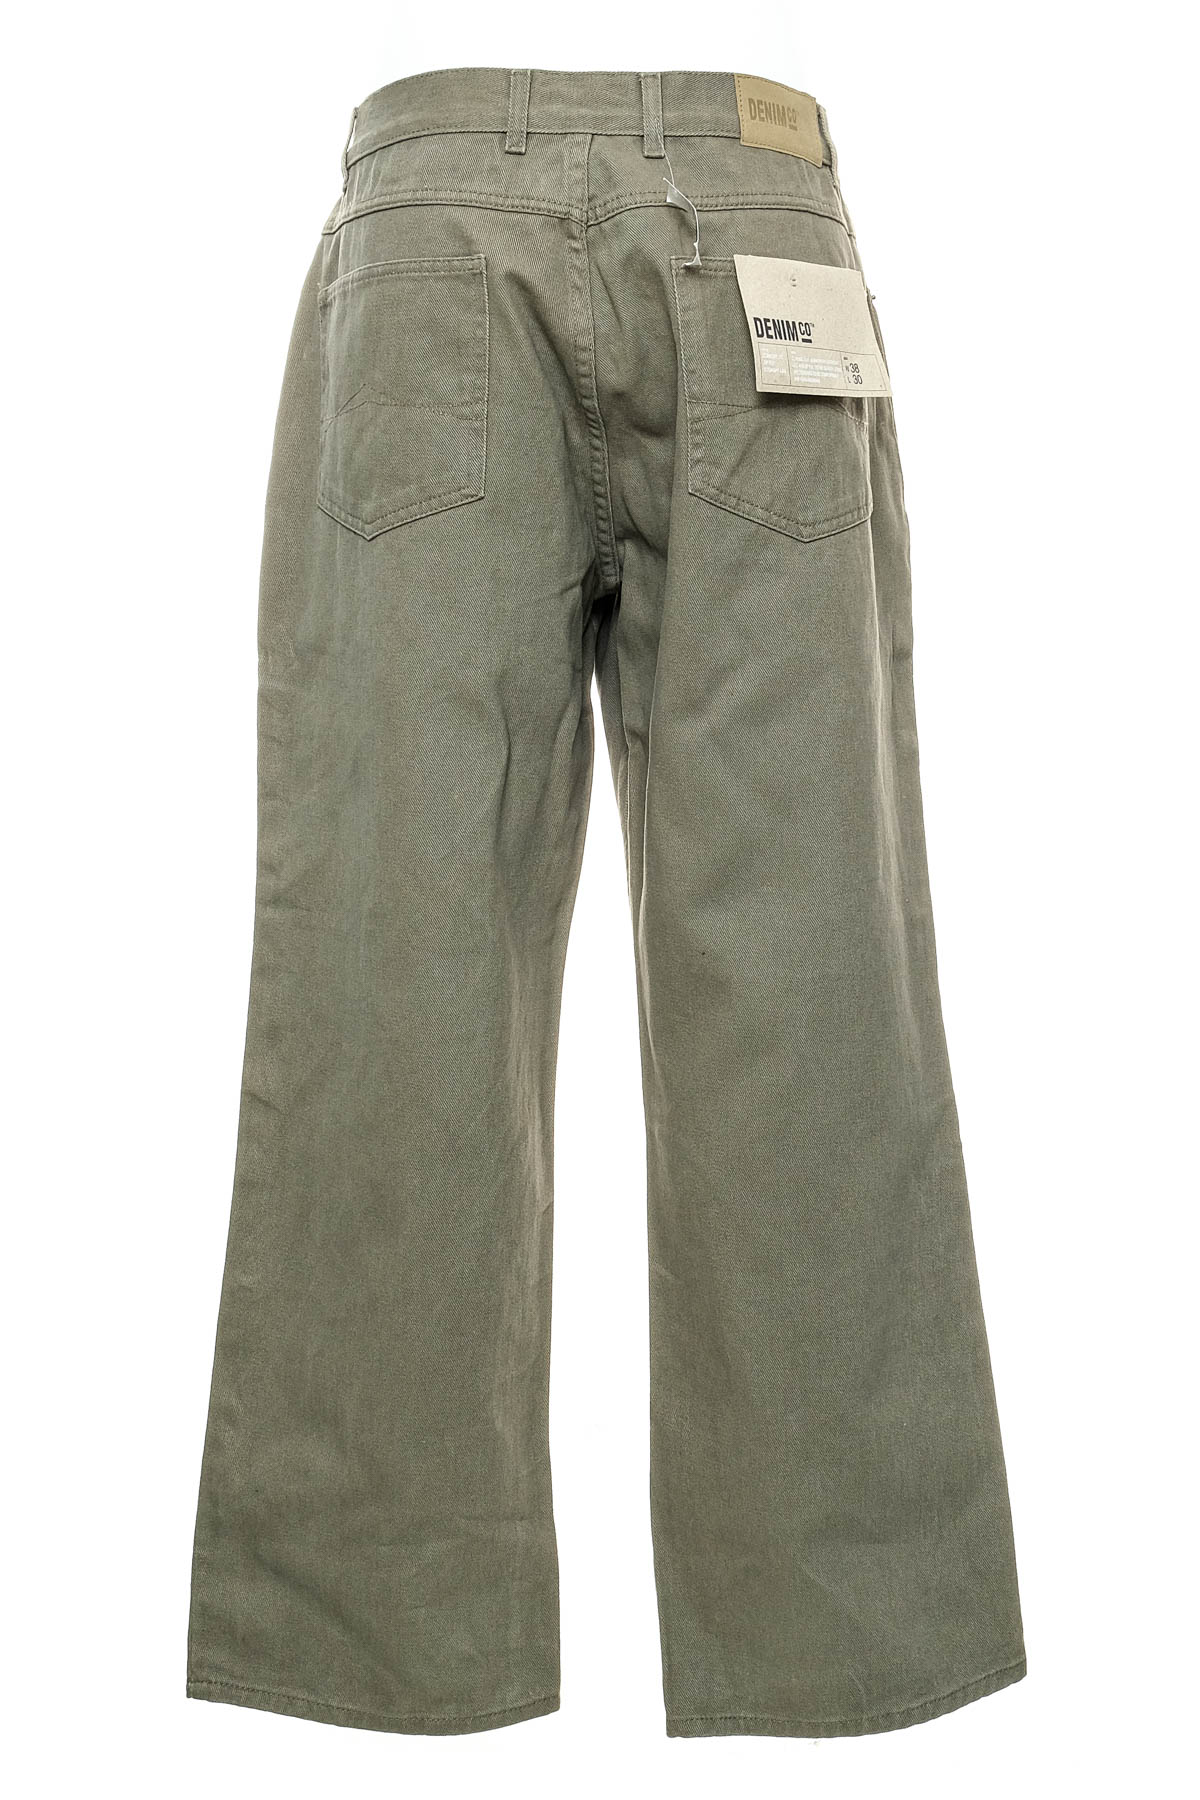 Pantalon pentru bărbați - Denim Co - 1